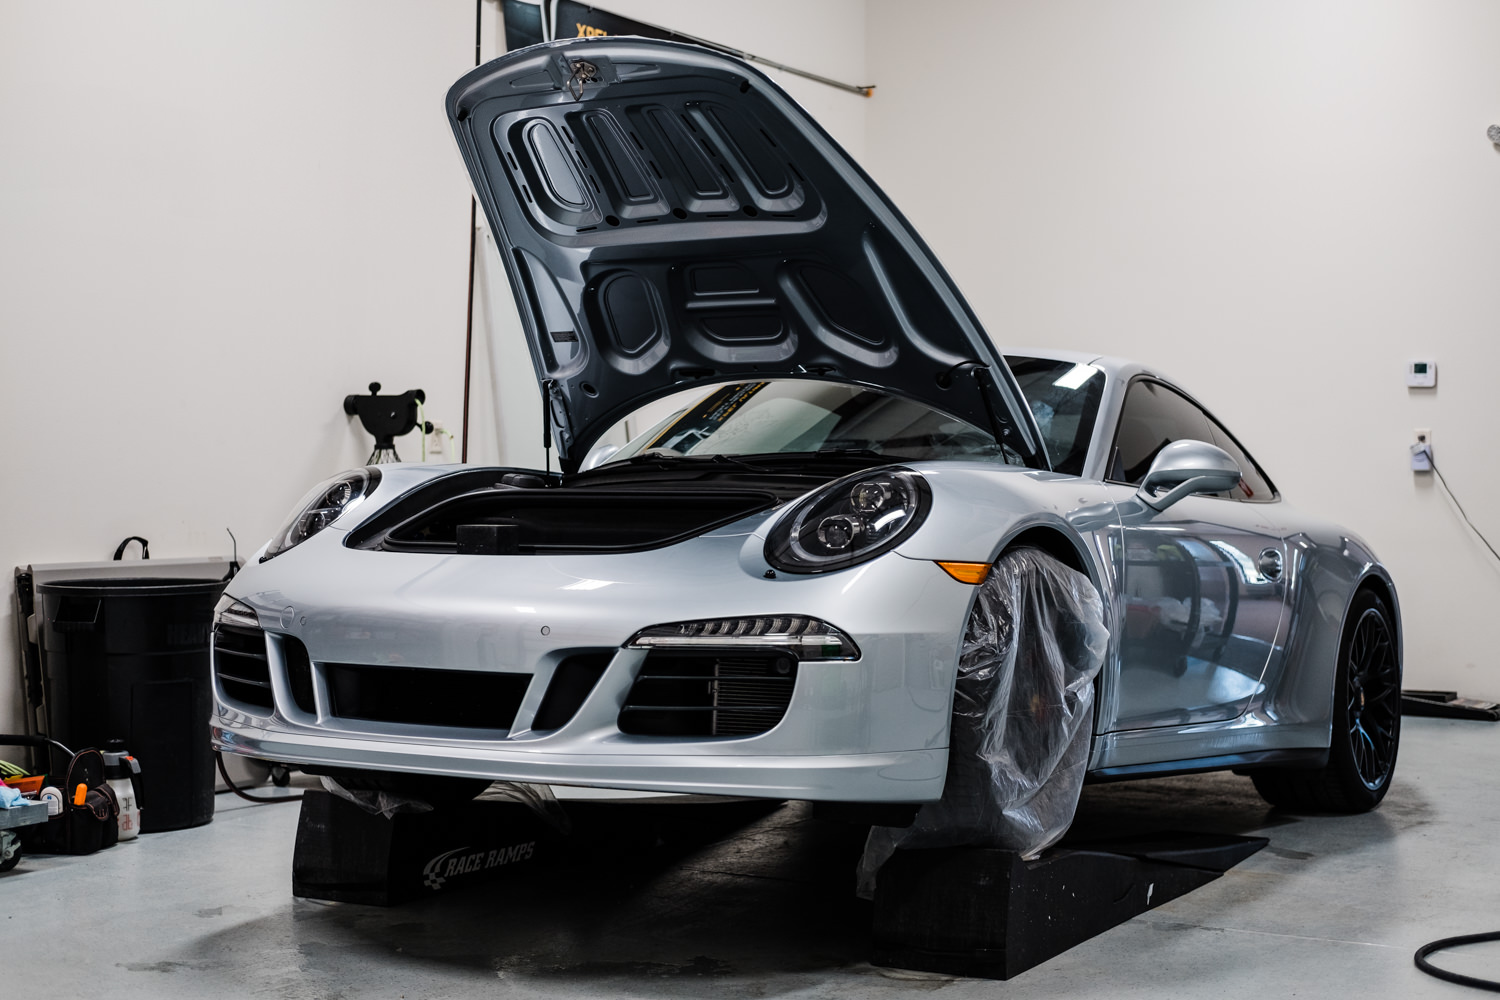 Porsche 911 - Porsche - Wichita Clear Bra - XPEL - XPEL Ultimate - Ceramic Pro - Ceramic Coating - Car Detailing - Porsche 911 GTS-121.jpg